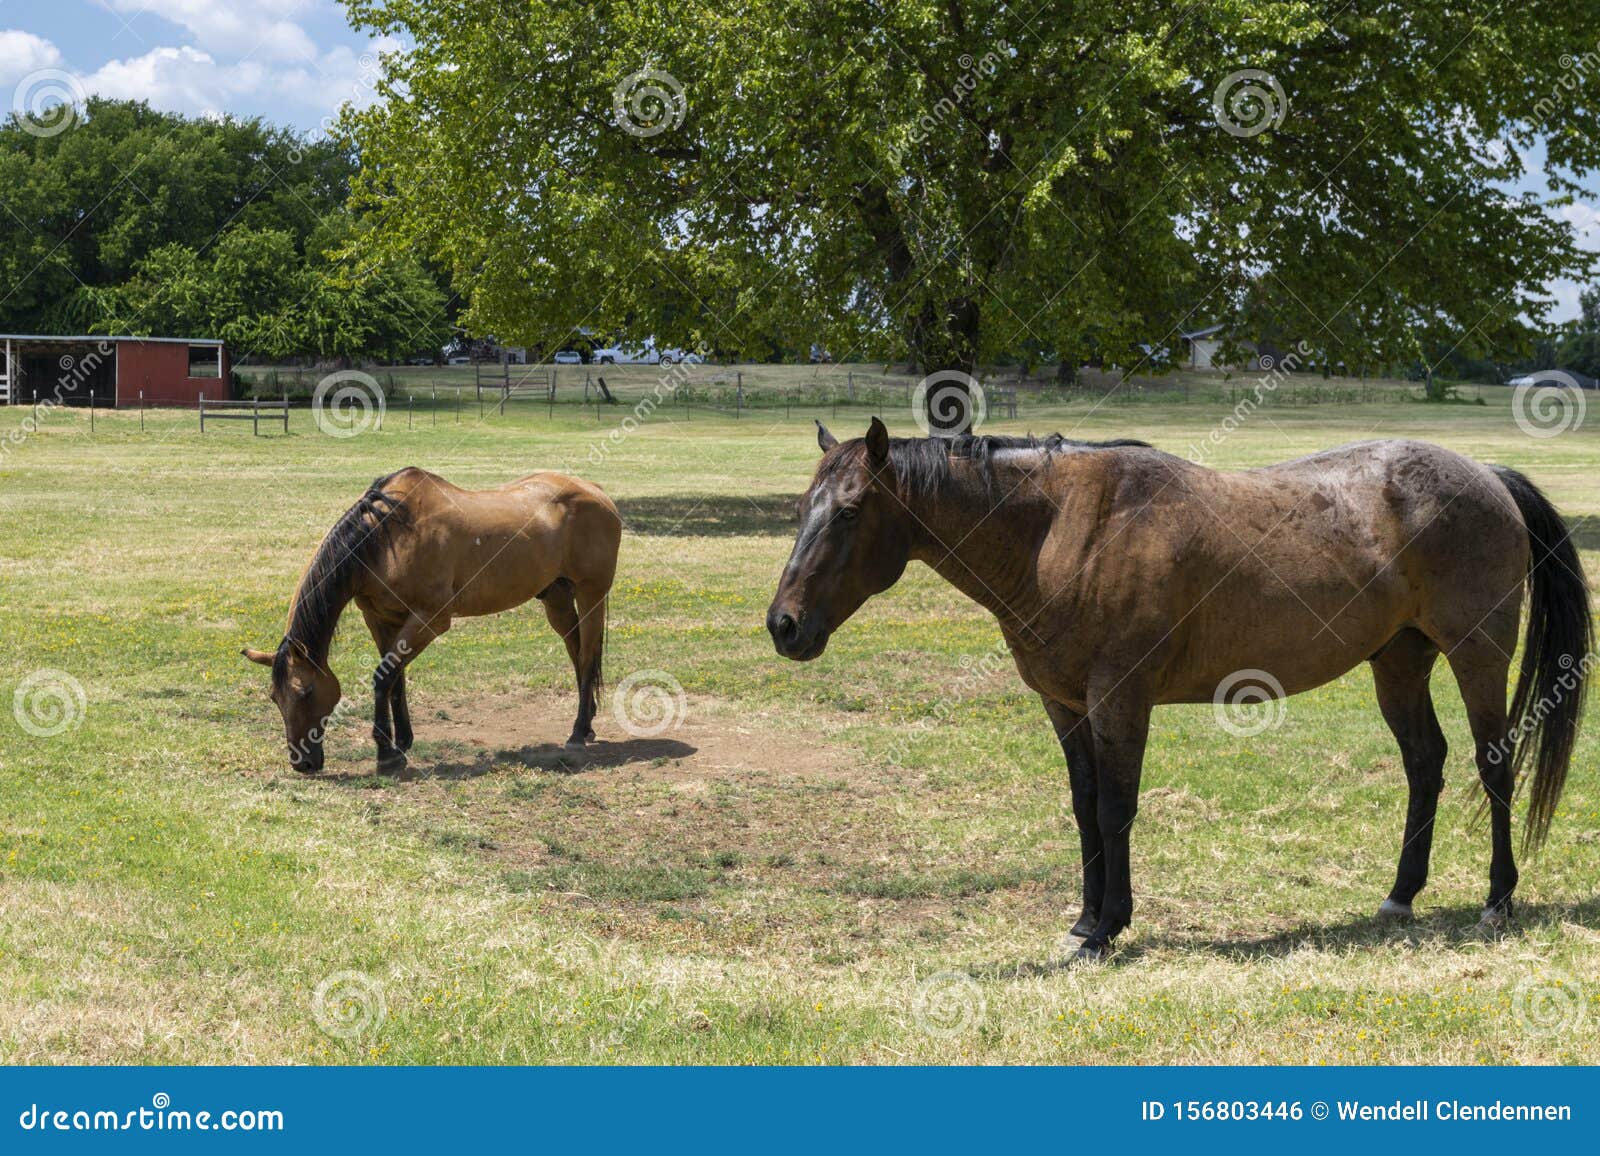 Cavalo Está Sentado Na Frente De Um Fundo Escuro, Fotos De Cavalos A Venda  Imagem de plano de fundo para download gratuito